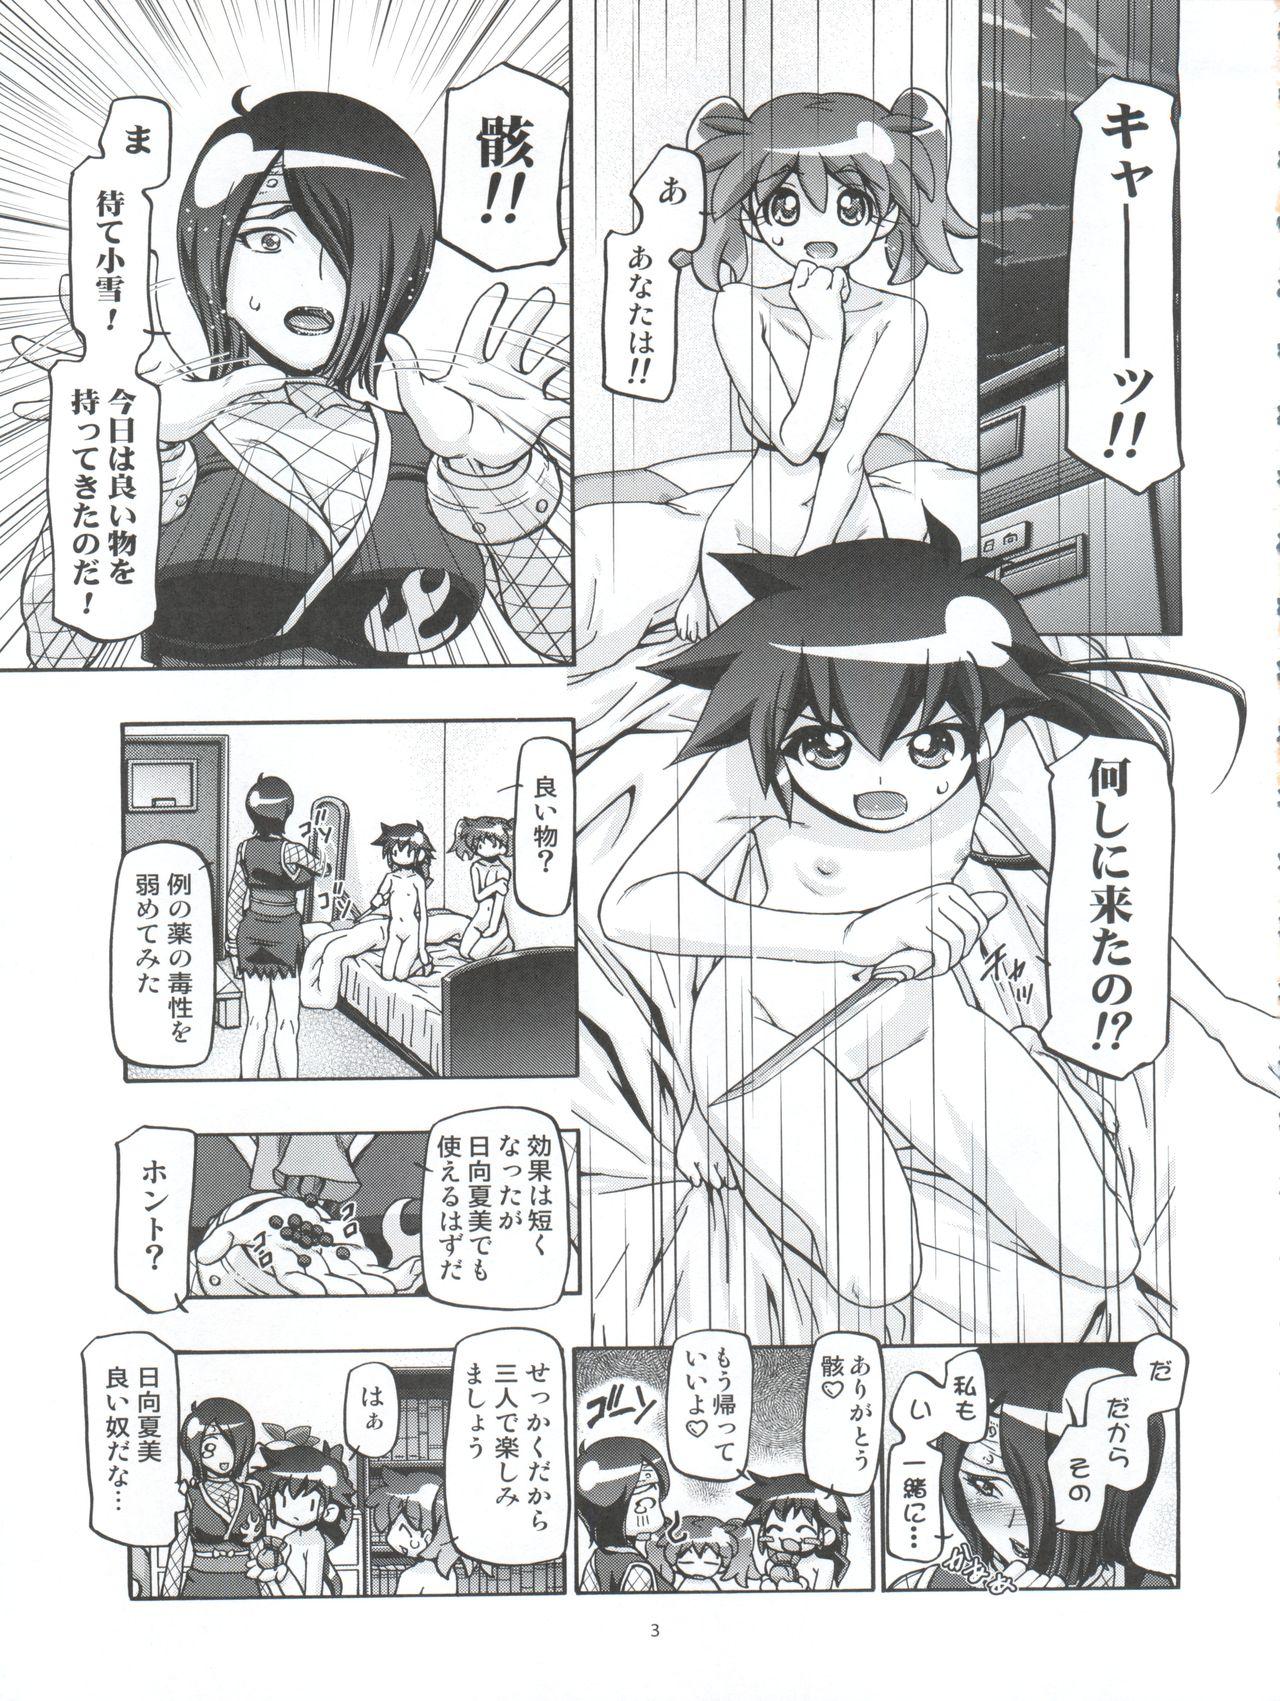 Teacher Aki Autumn - Keroro gunsou Strip - Page 3